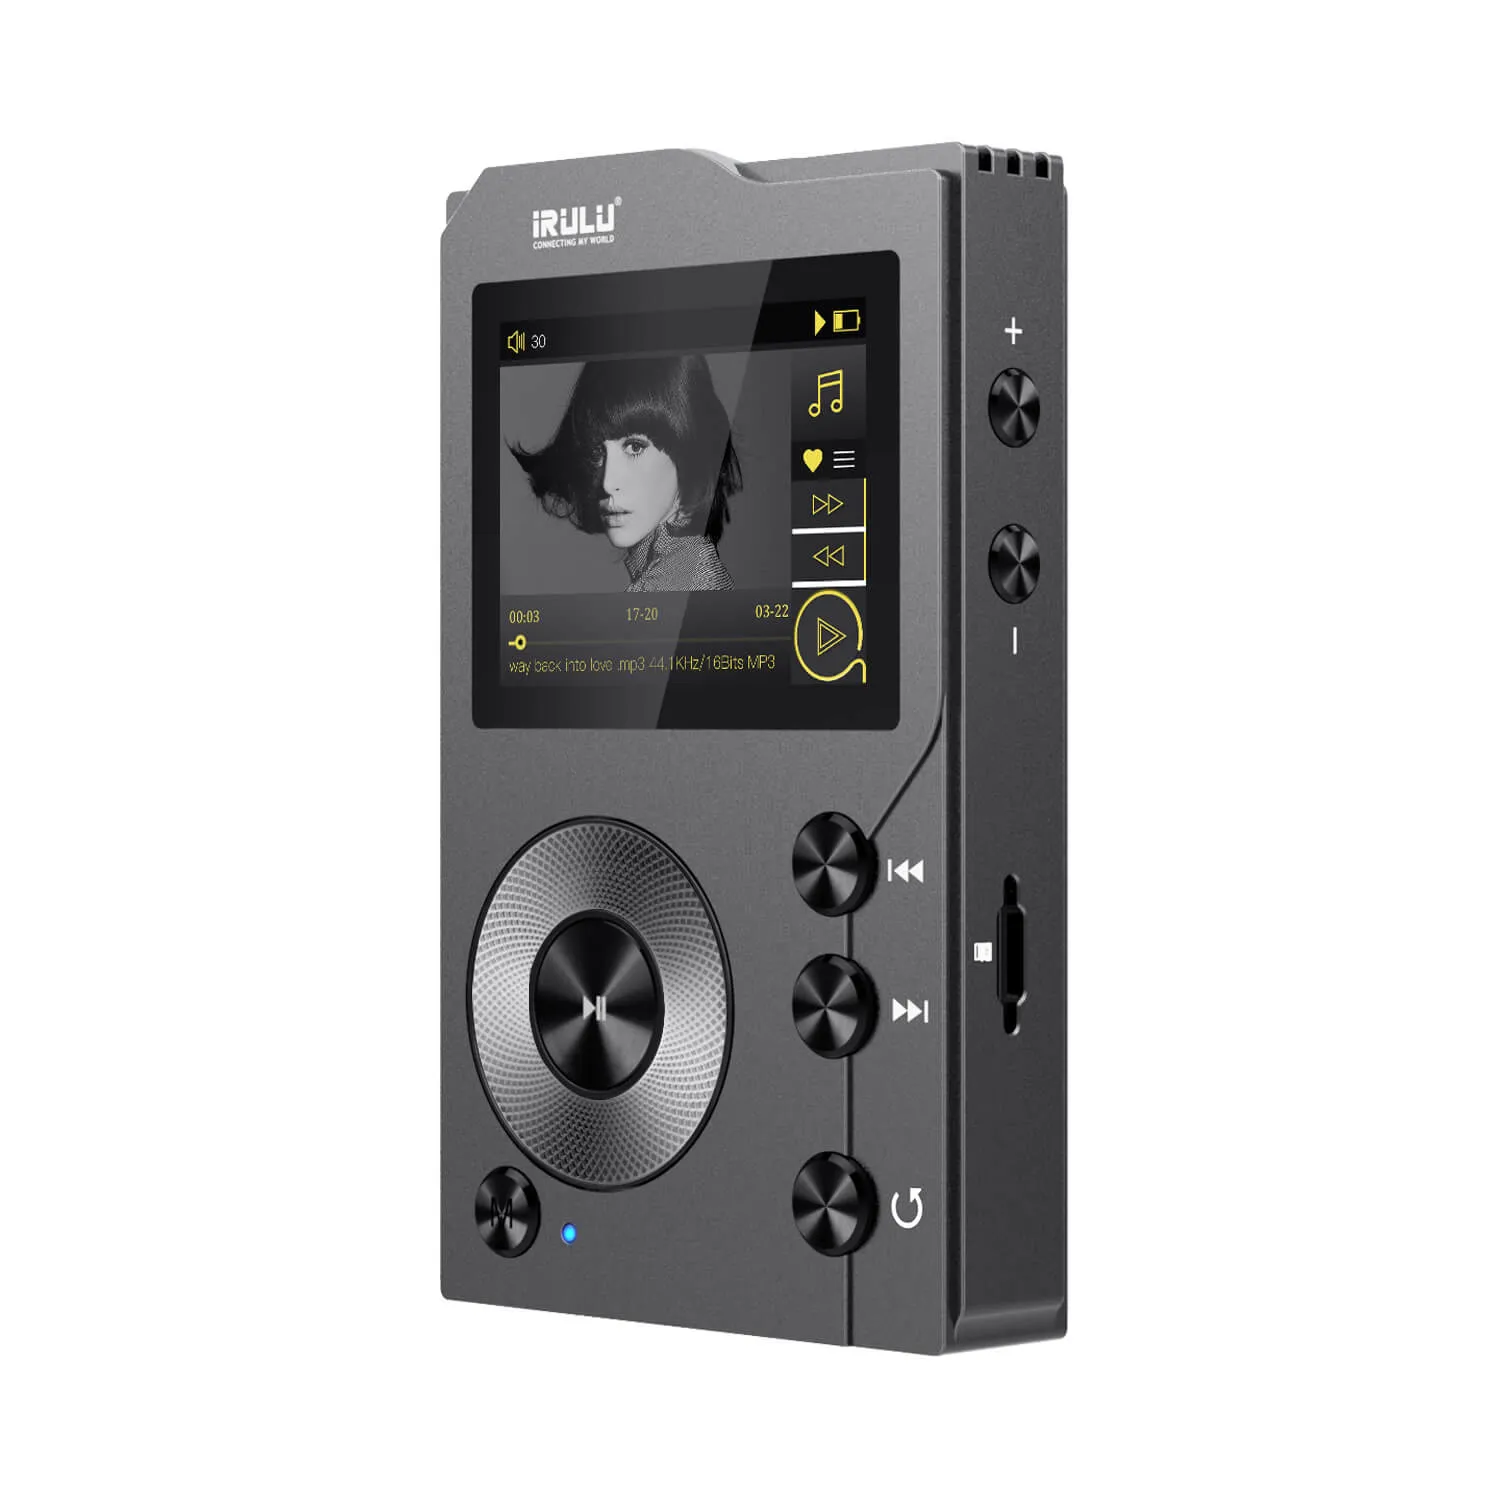 Atacadista iRULU F20 HiFi Lossless Mp3 Player com Bluetooth: DSD alta resolução Digital Audio Music Player com cartão de memória de 16GB